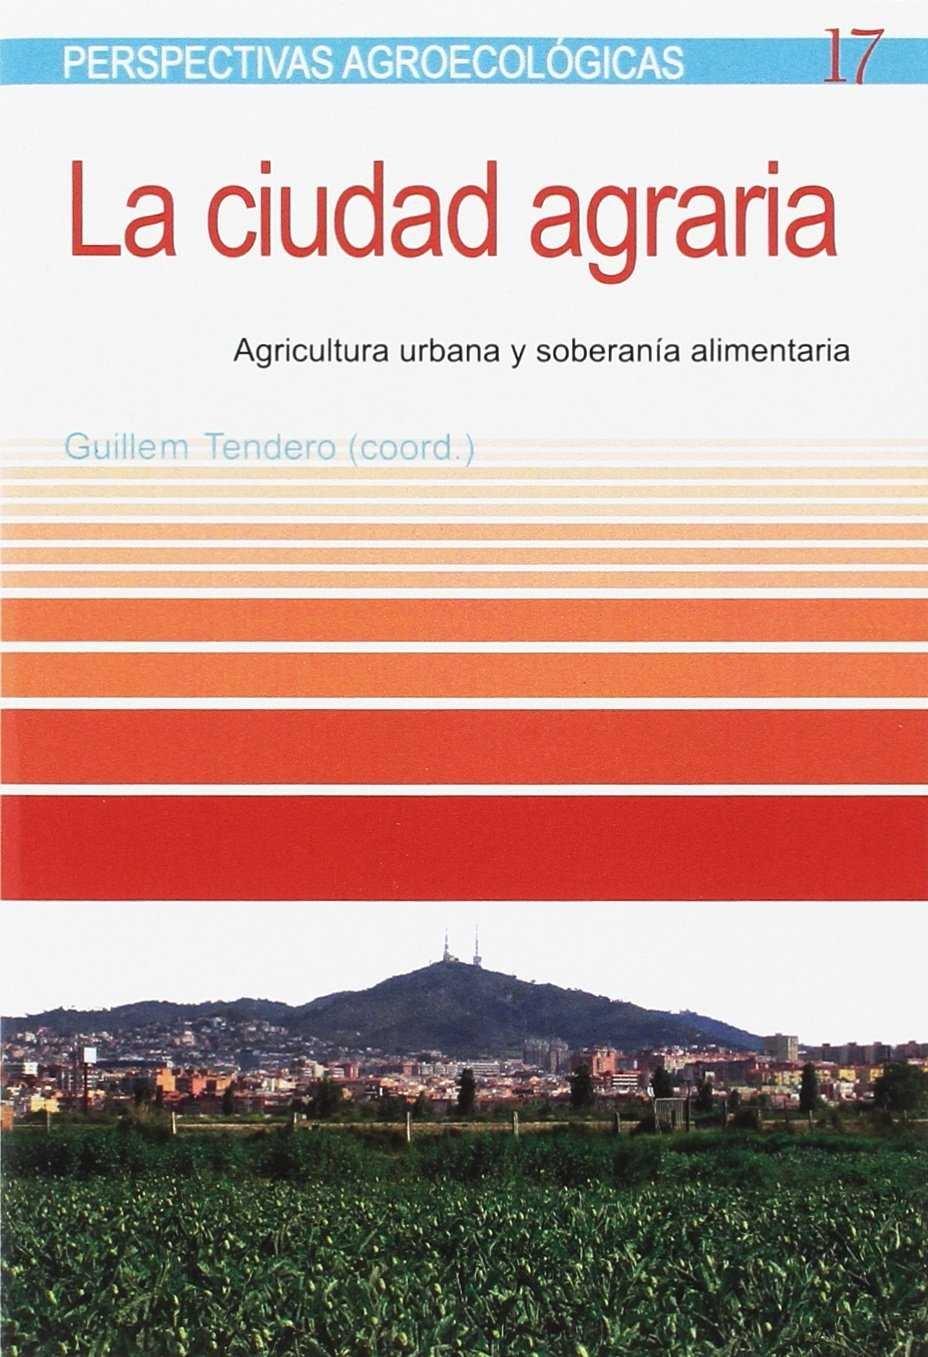 CIUDAD AGRARIA, LA "AGRICULTURA URBANA Y SOBERANÍA ALIMENTARIA ". 